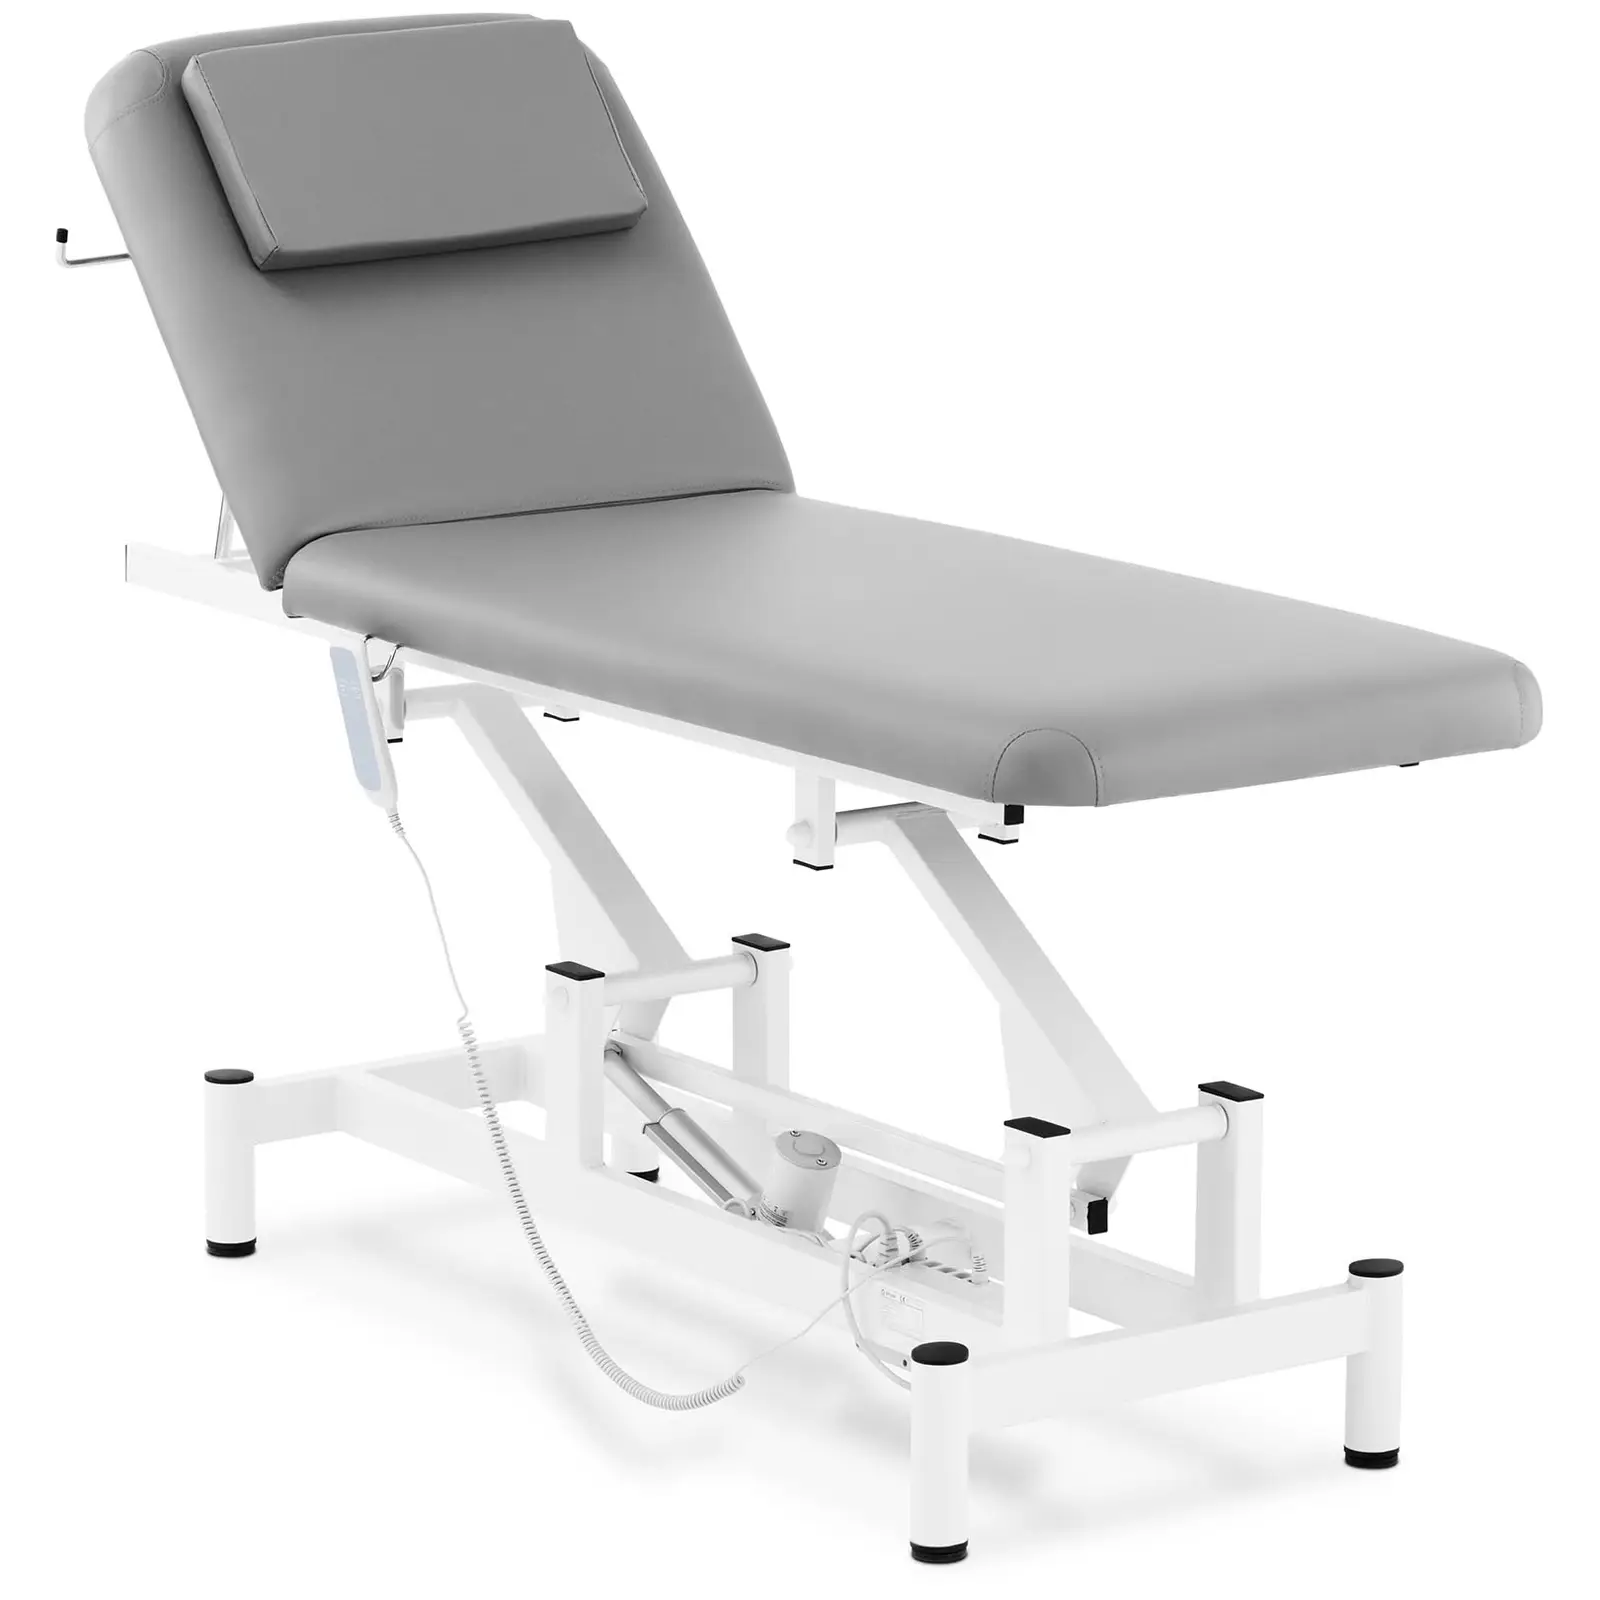 Table de massage - 50 W - 150 kg - Gris